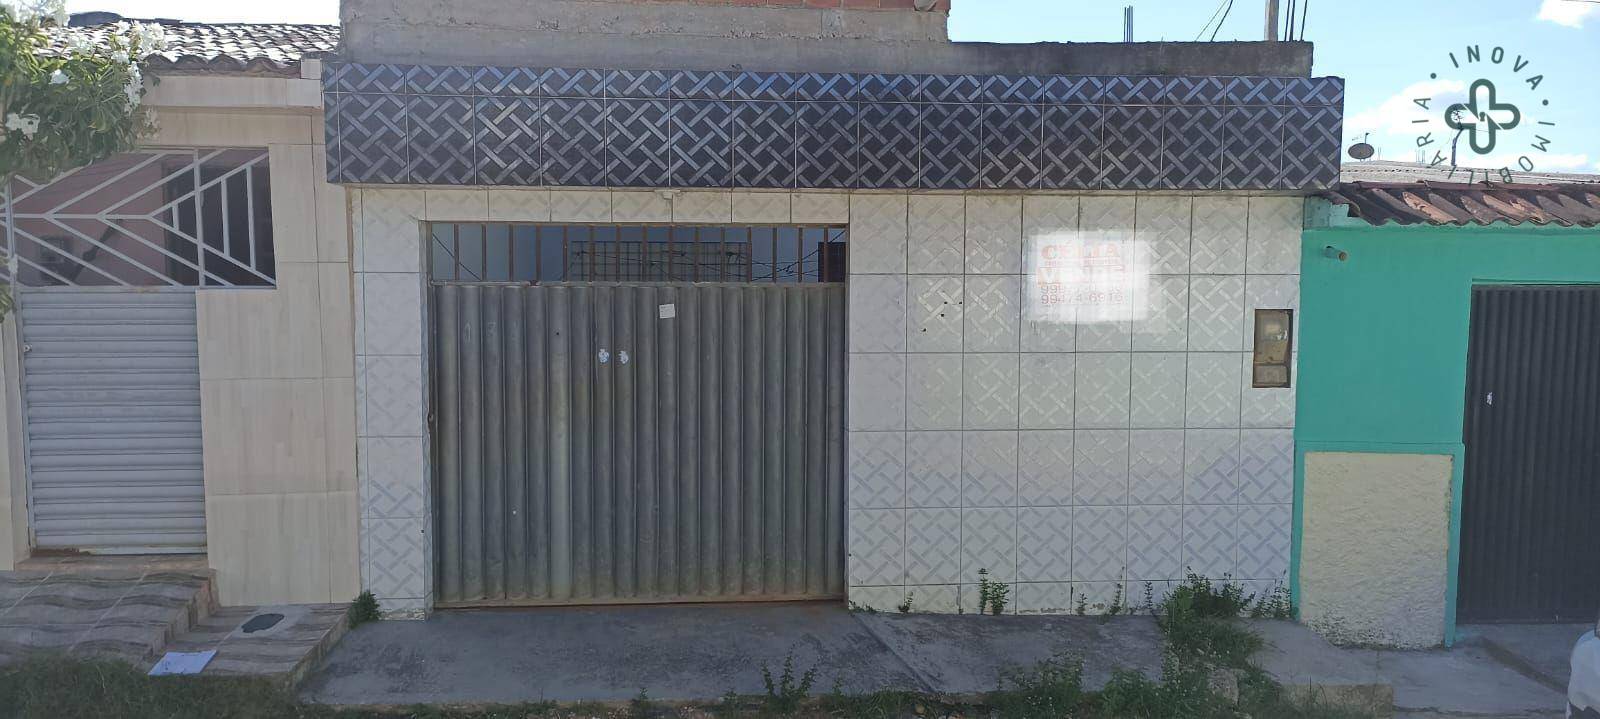 Casa em Rendeiras, Caruaru/PE de 120m² 3 quartos à venda por R$ 179.000,00